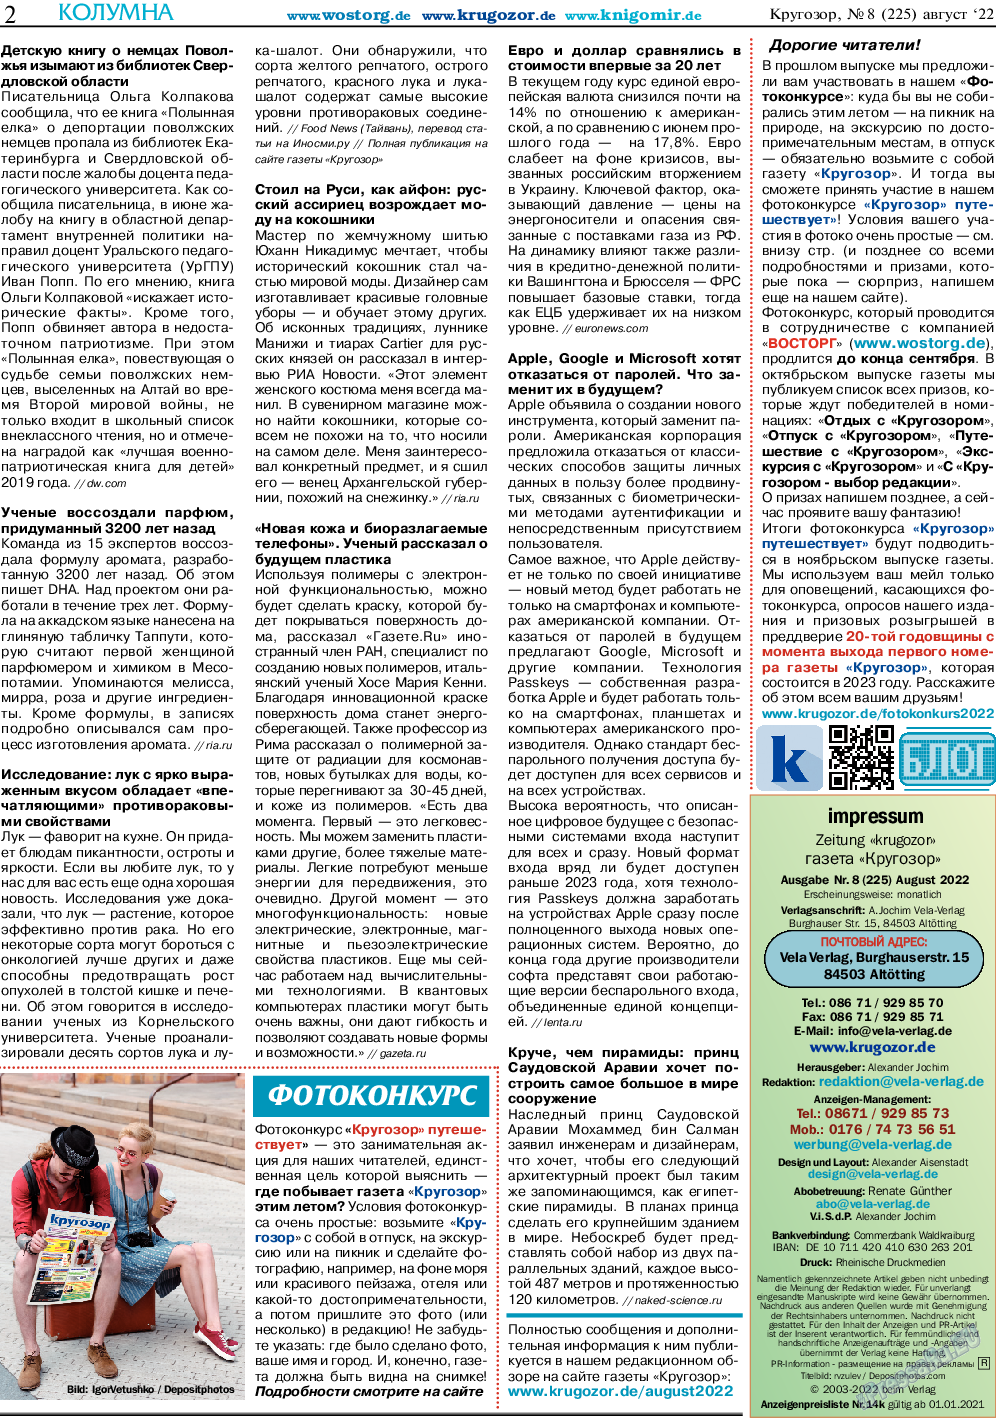 Кругозор (газета). 2022 год, номер 8, стр. 2